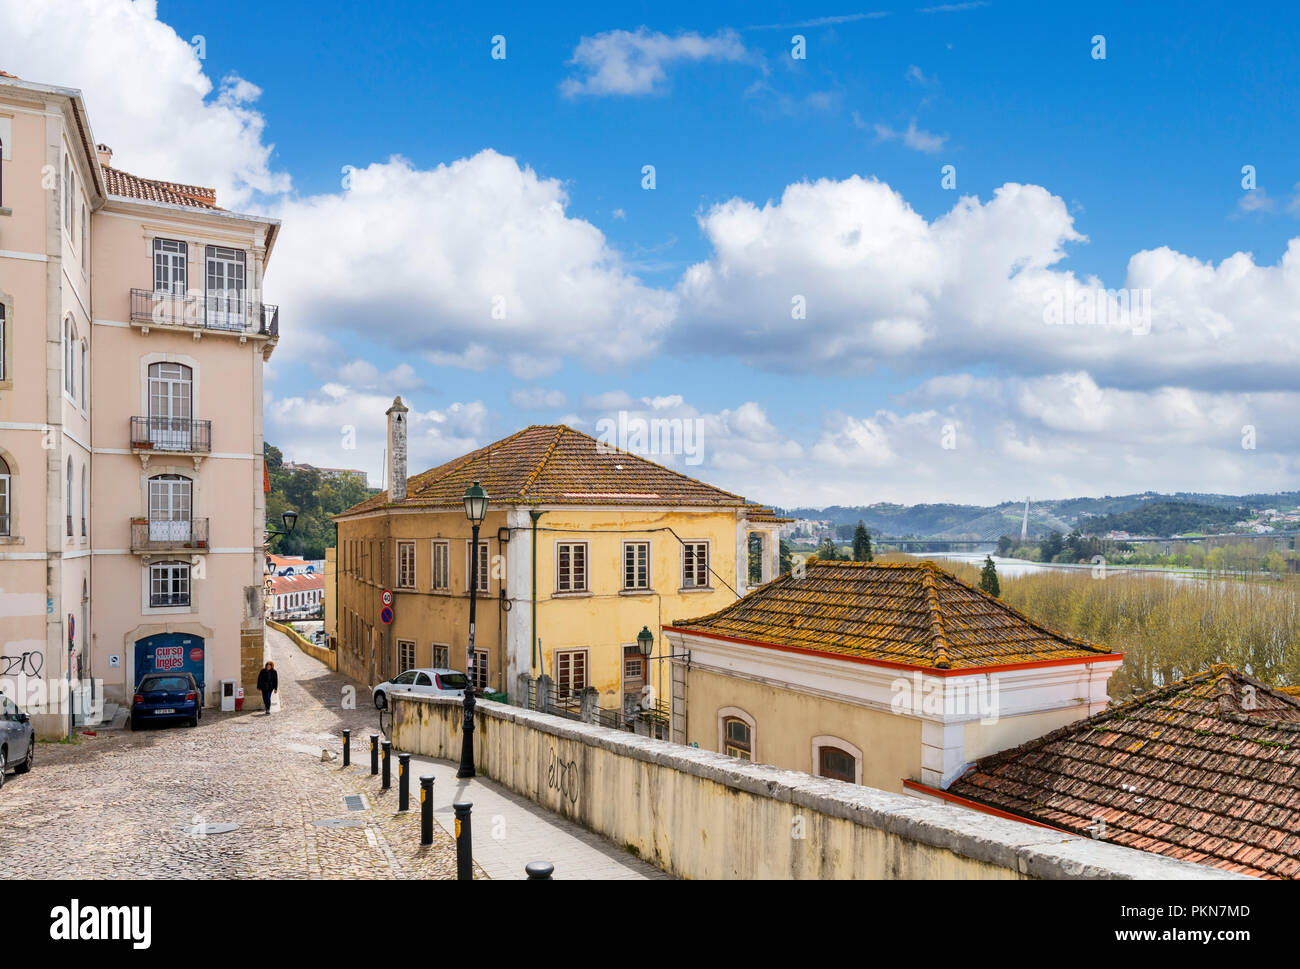 Tipica strada di ciottoli nel centro storico della città con il fiume Mondego a destra, Rua da Couraça Lisboa, Coimbra, Portogallo Foto Stock